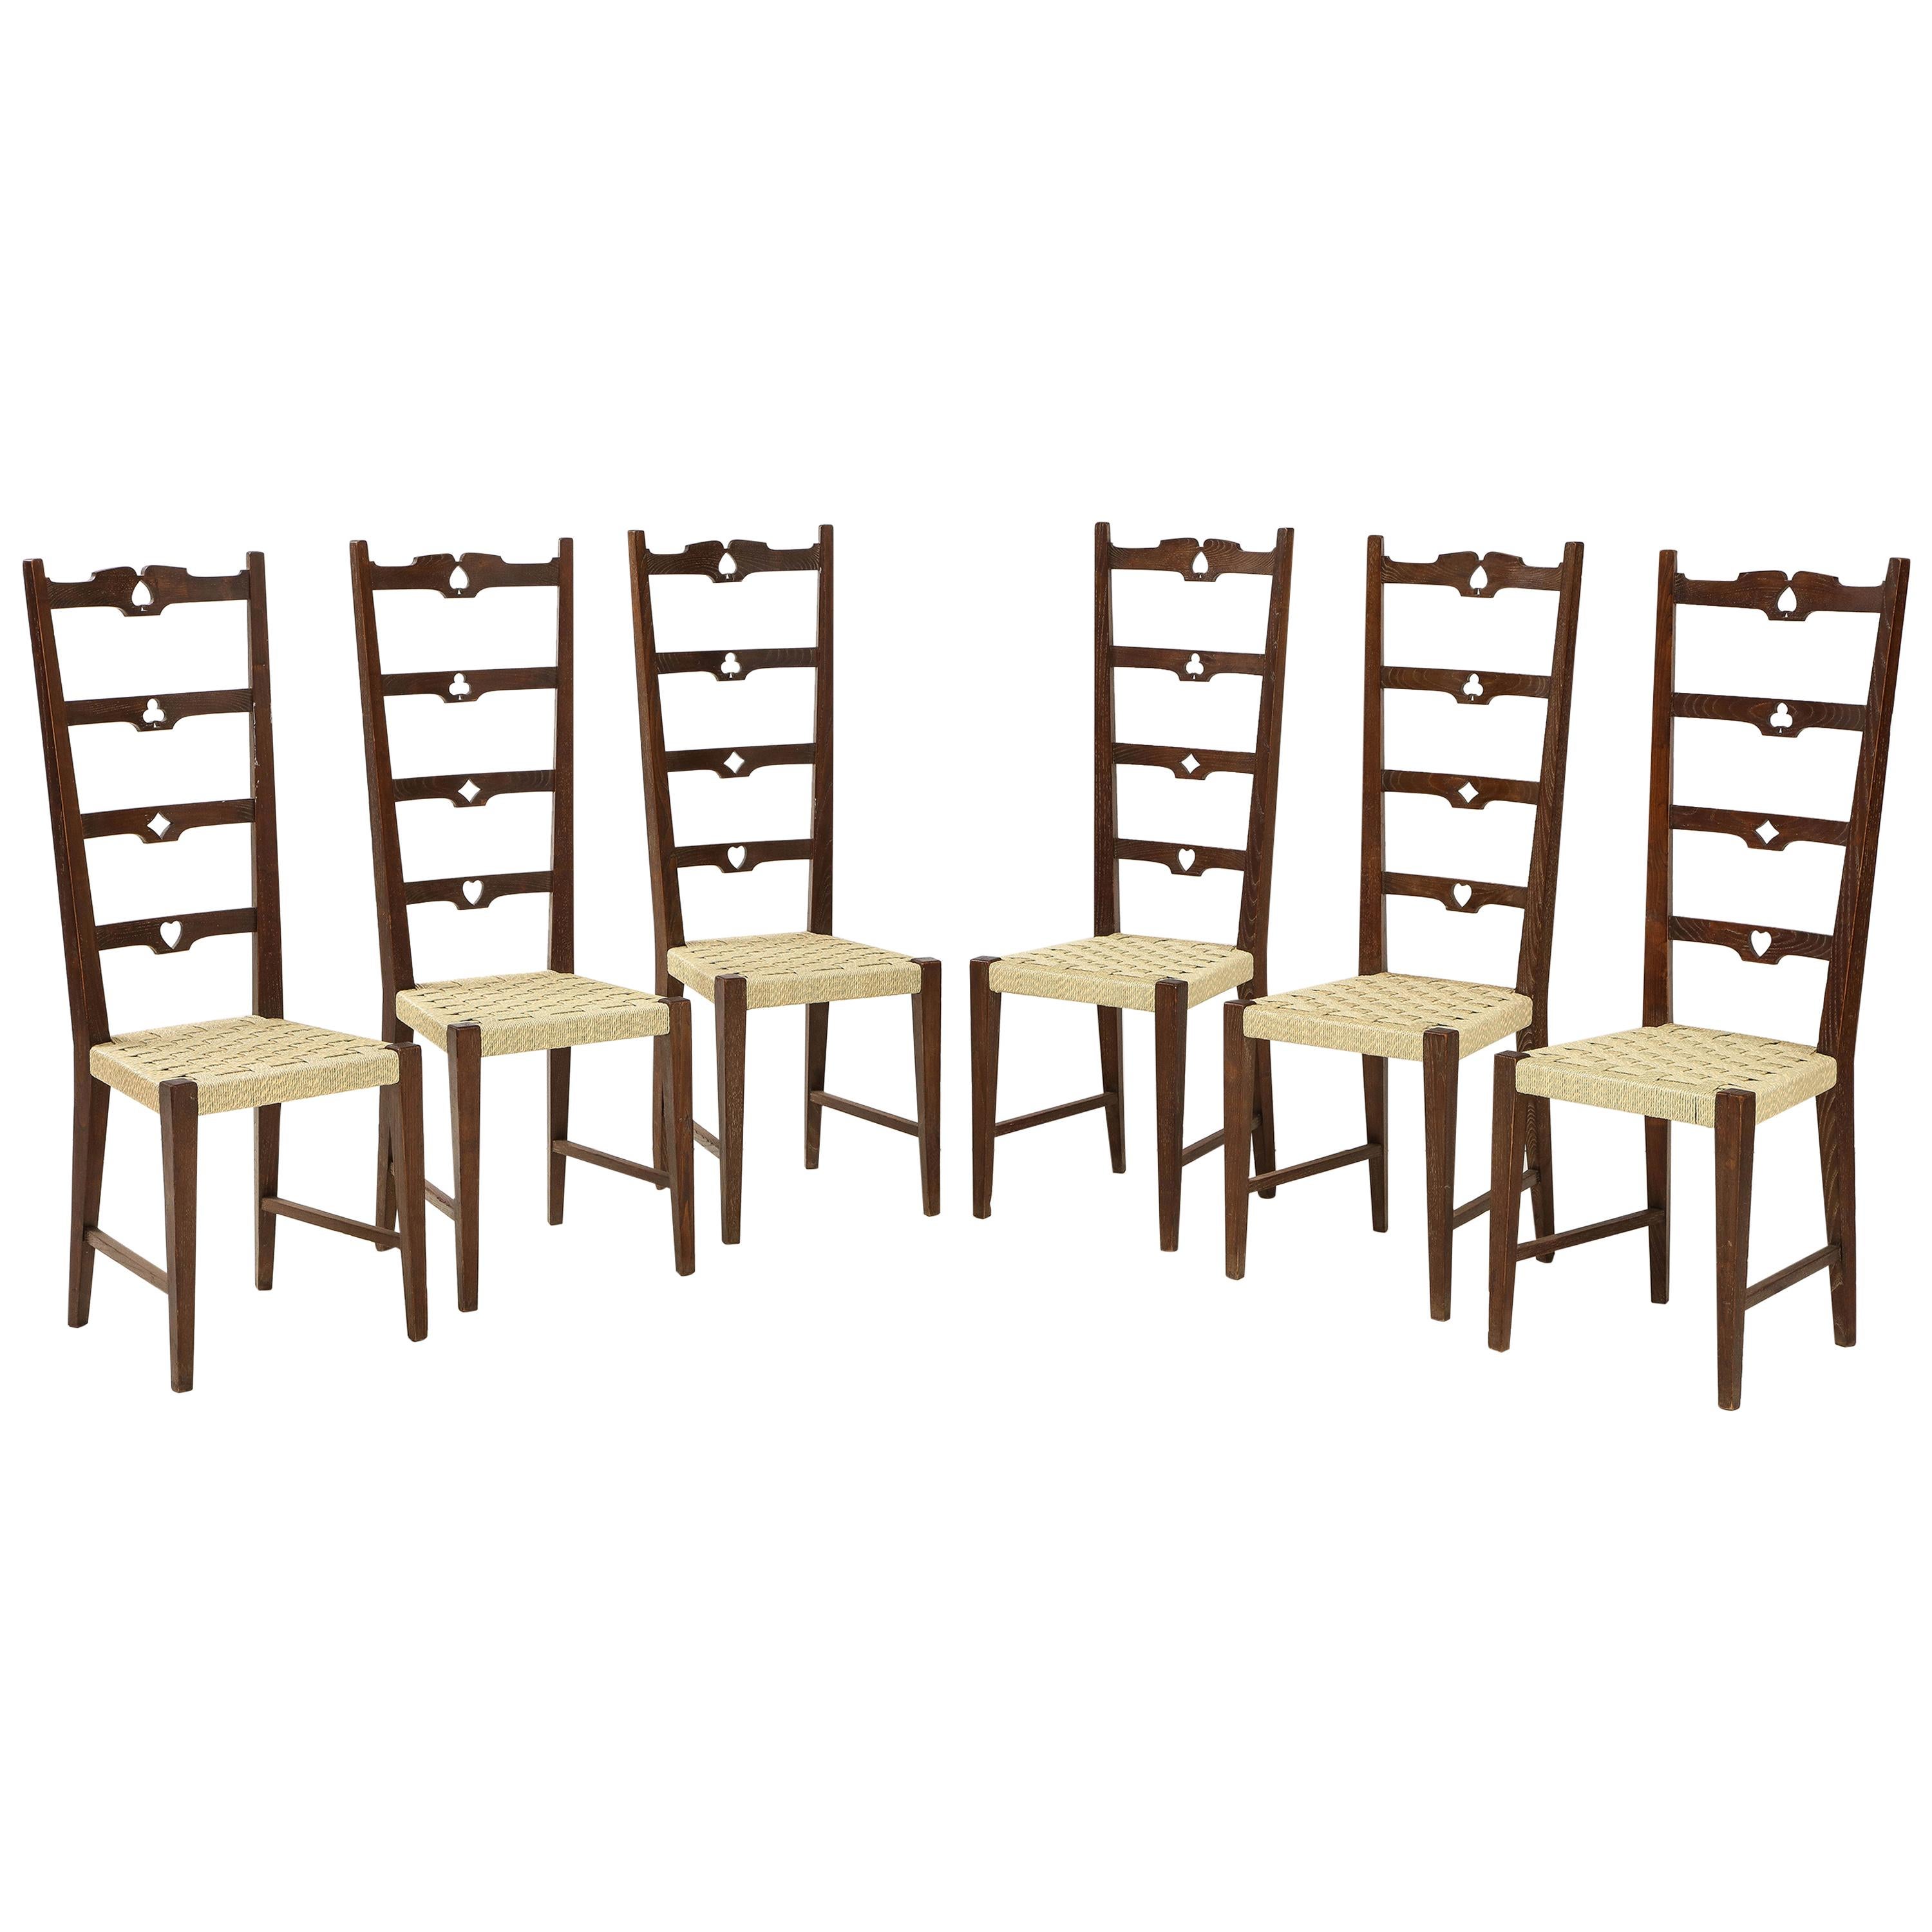 Ensemble de six chaises italiennes rustiques à dossier en échelle avec motif de cartes à jouer